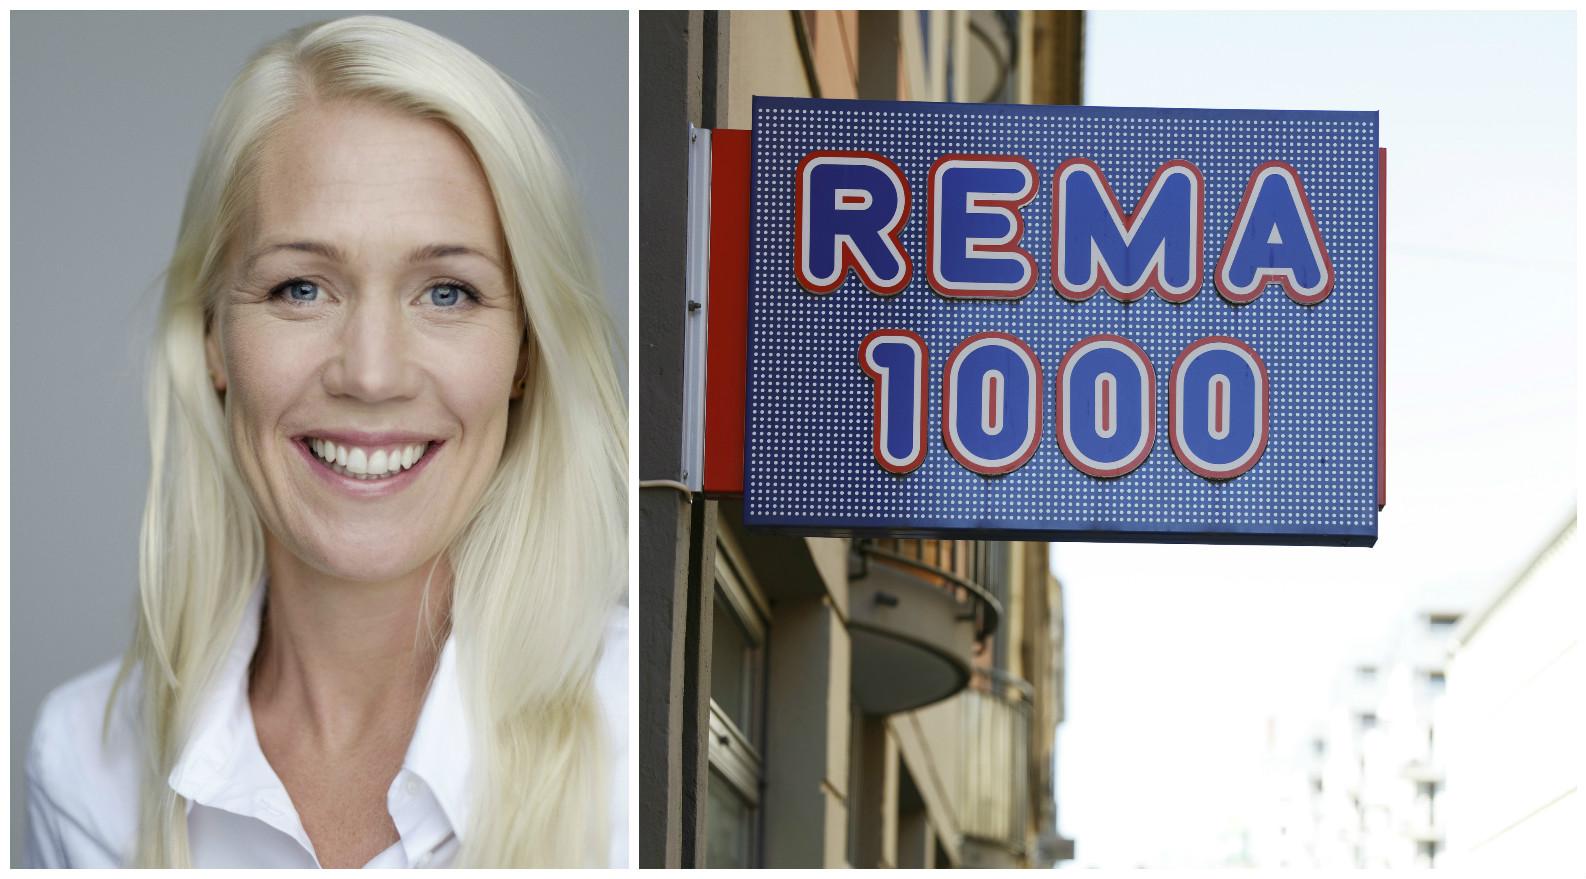 GOD HANDEL: Målet er å skape en god handleopplevelse for våre kunder i Bergen, Hordaland og resten av landet, skriver Mette Fossum, kommunikasjonsdirektør i REMA 1000.